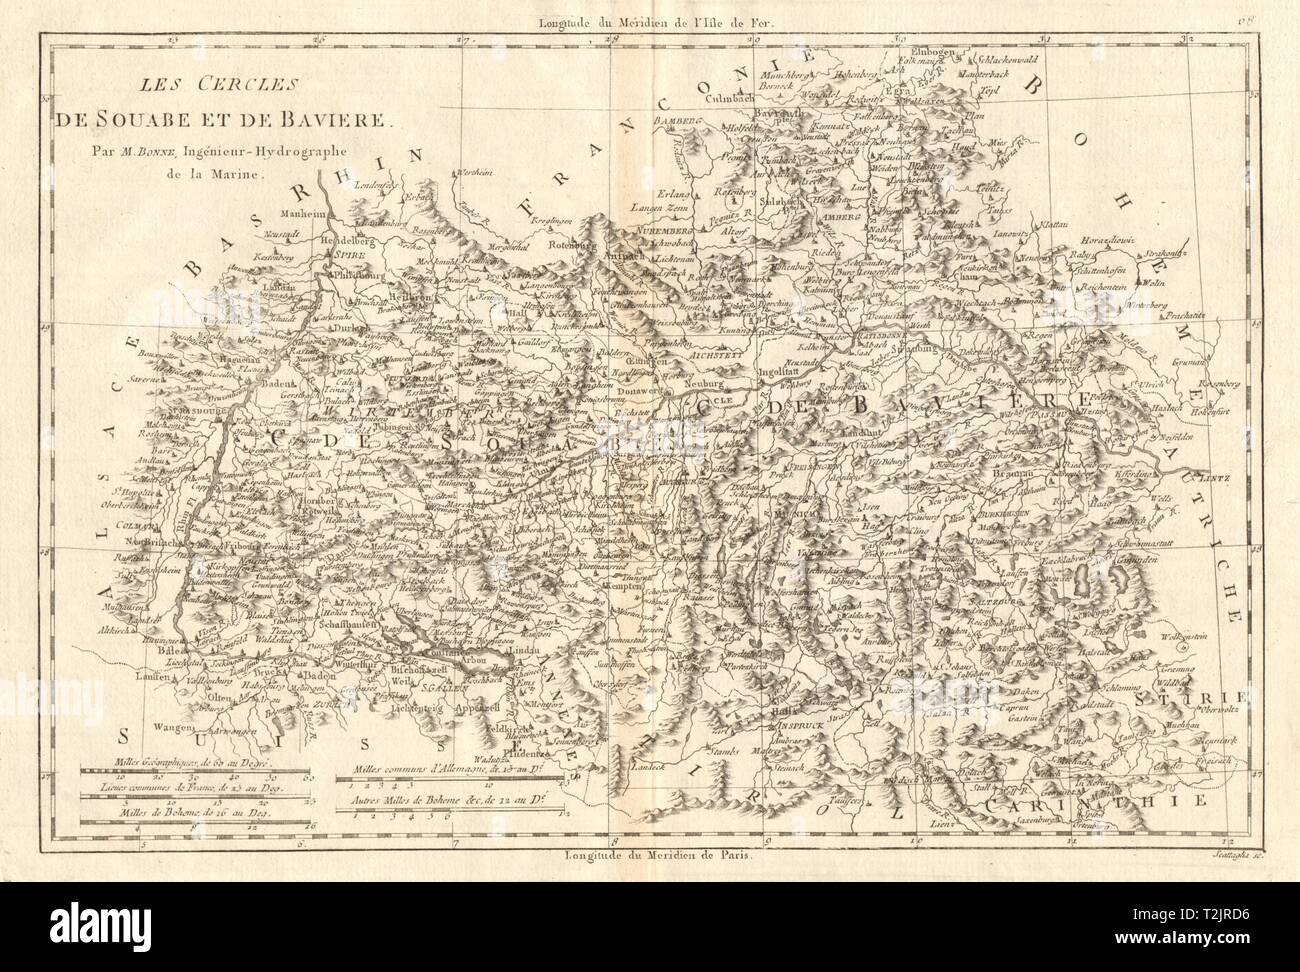 Les Cercles de Souabe et de Baviere. Les cercles de souabe et de Bavière. BONNE CARTE 1789 Banque D'Images